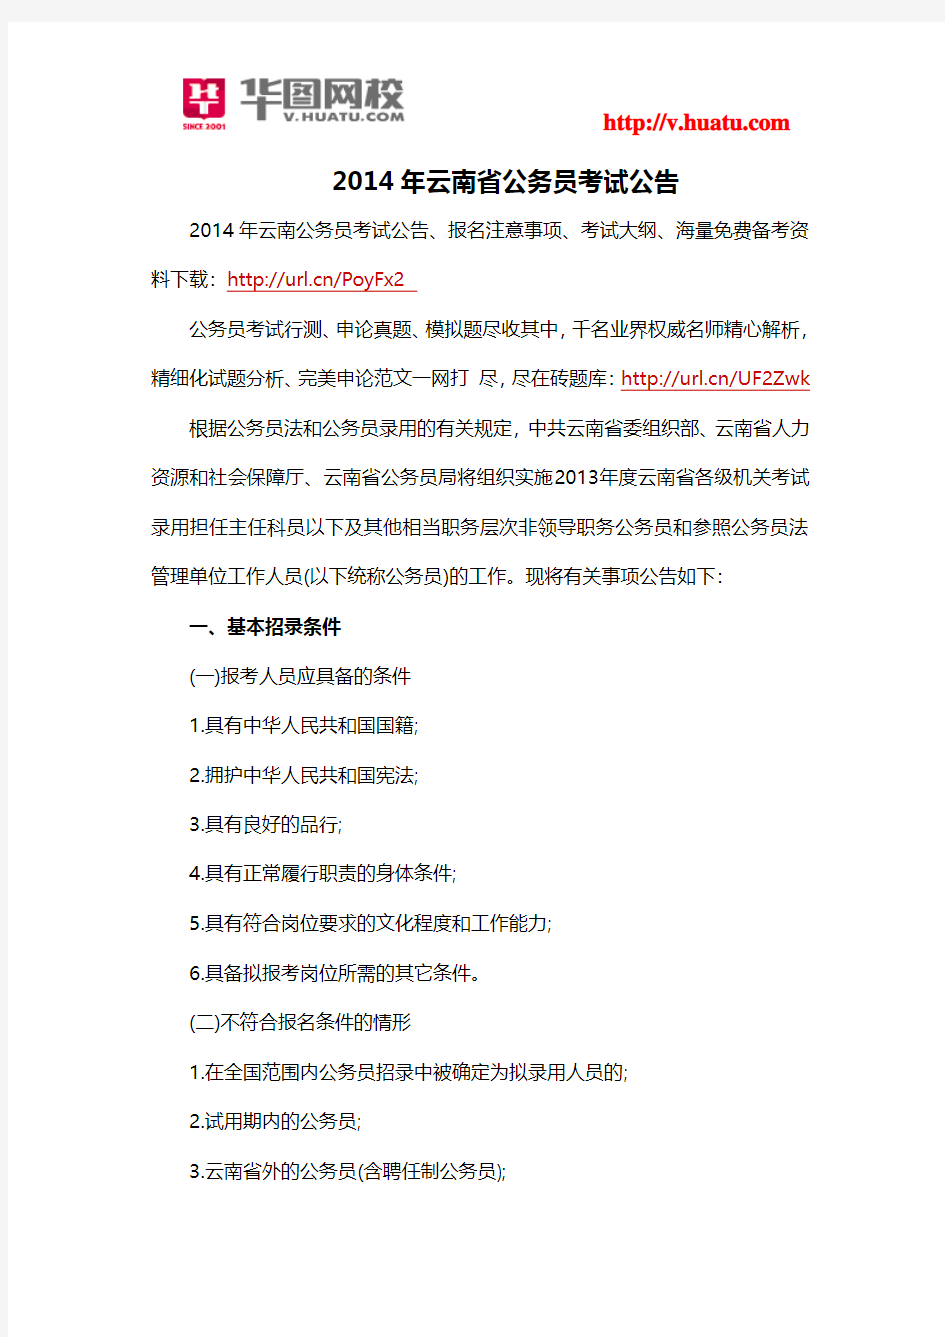 2014年云南省公务员考试公告